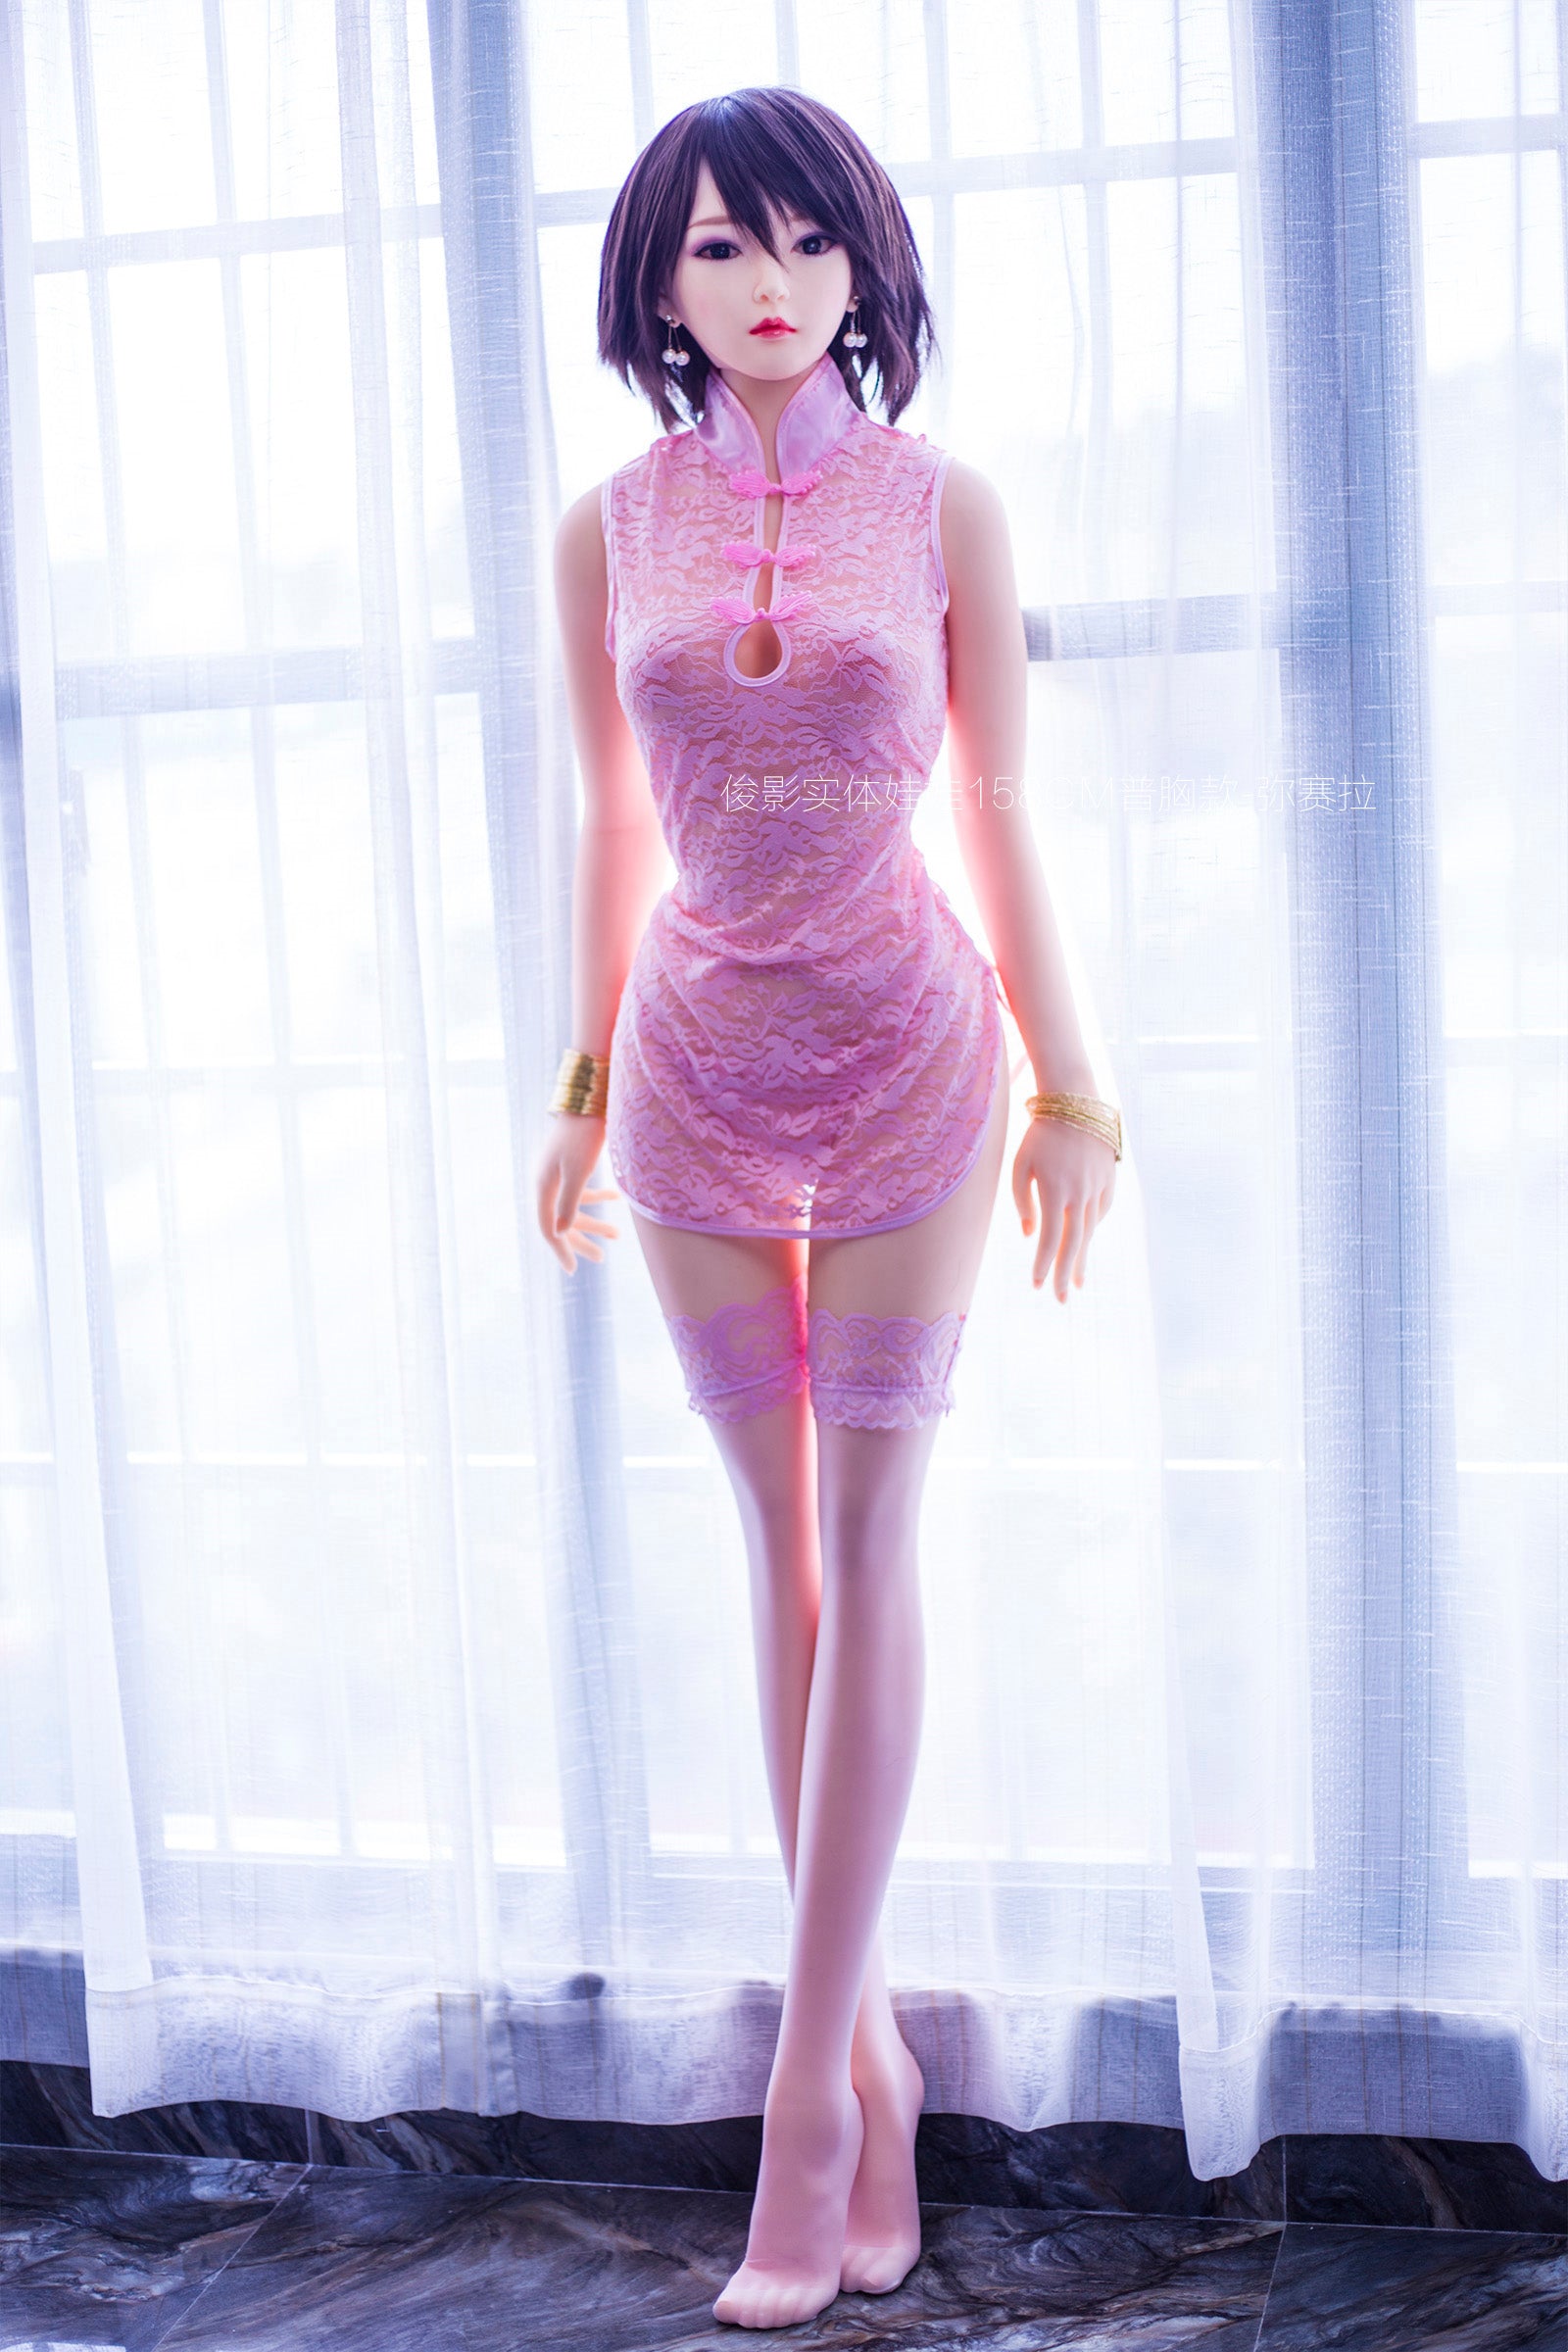 Neodoll Sugar Babe - Aliya - Realistic Sex Doll - 158cm - Natural